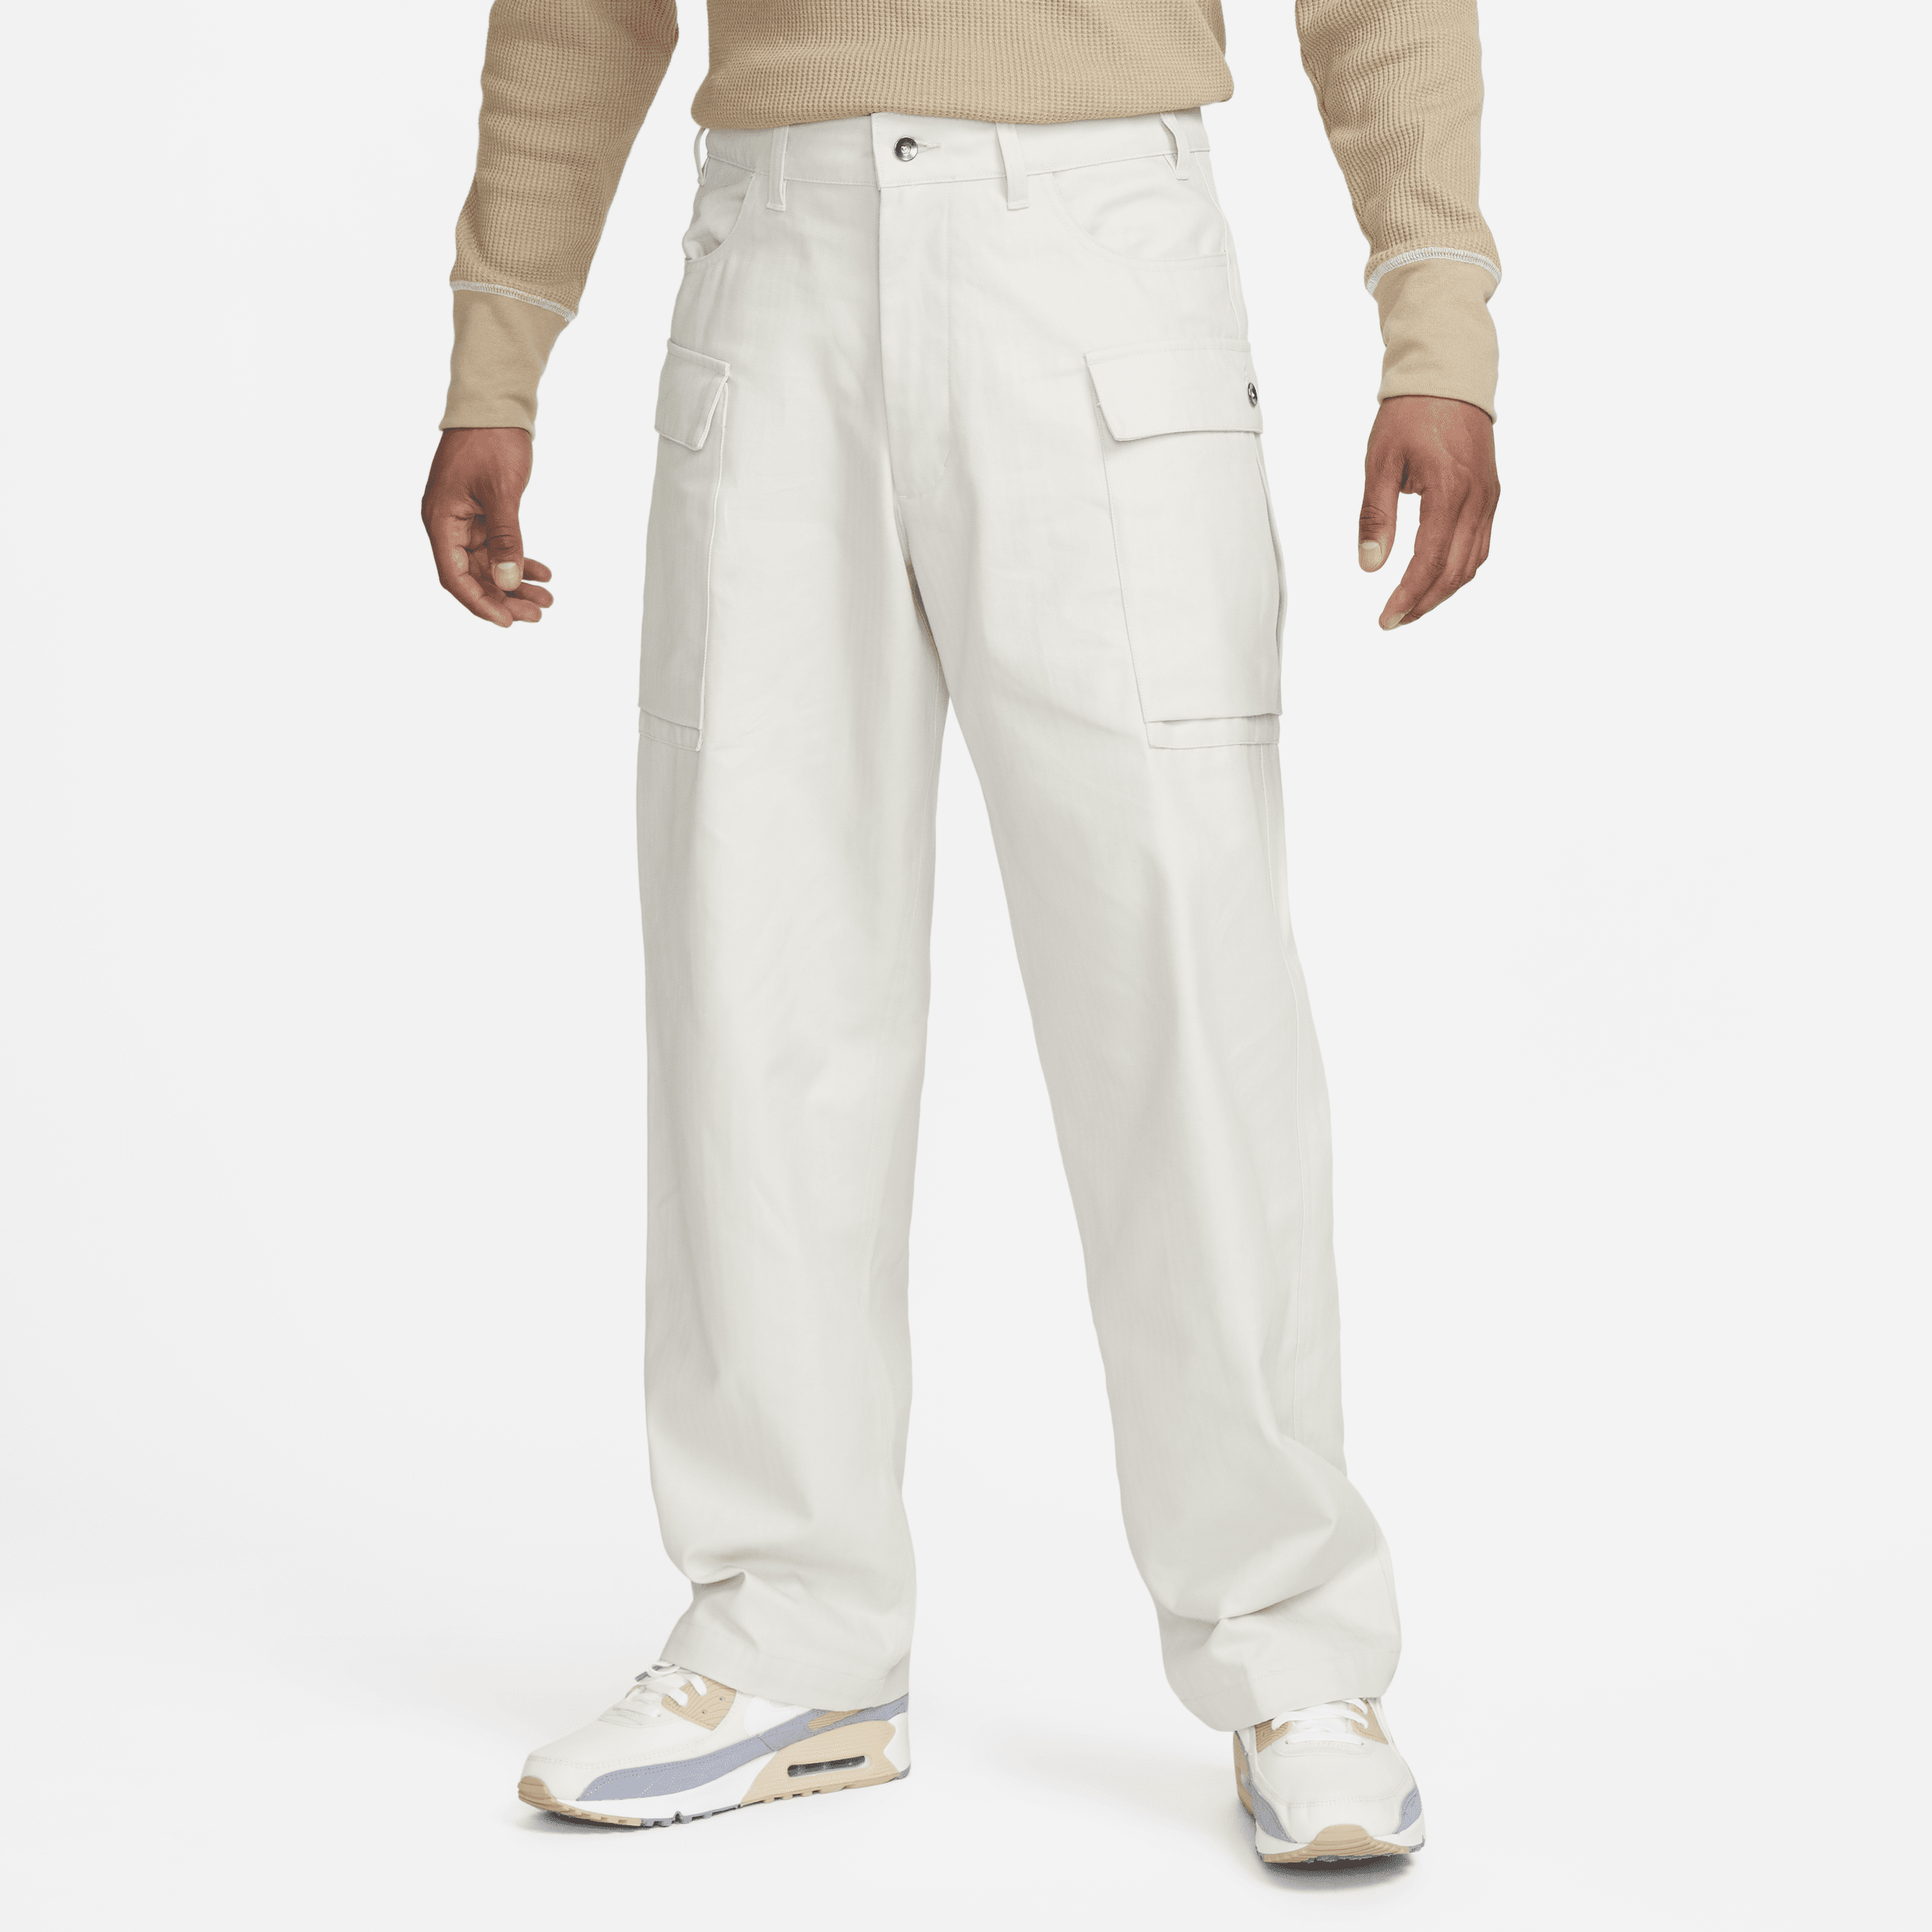 Nike Life Pantalón cargo - Hombre - Gris